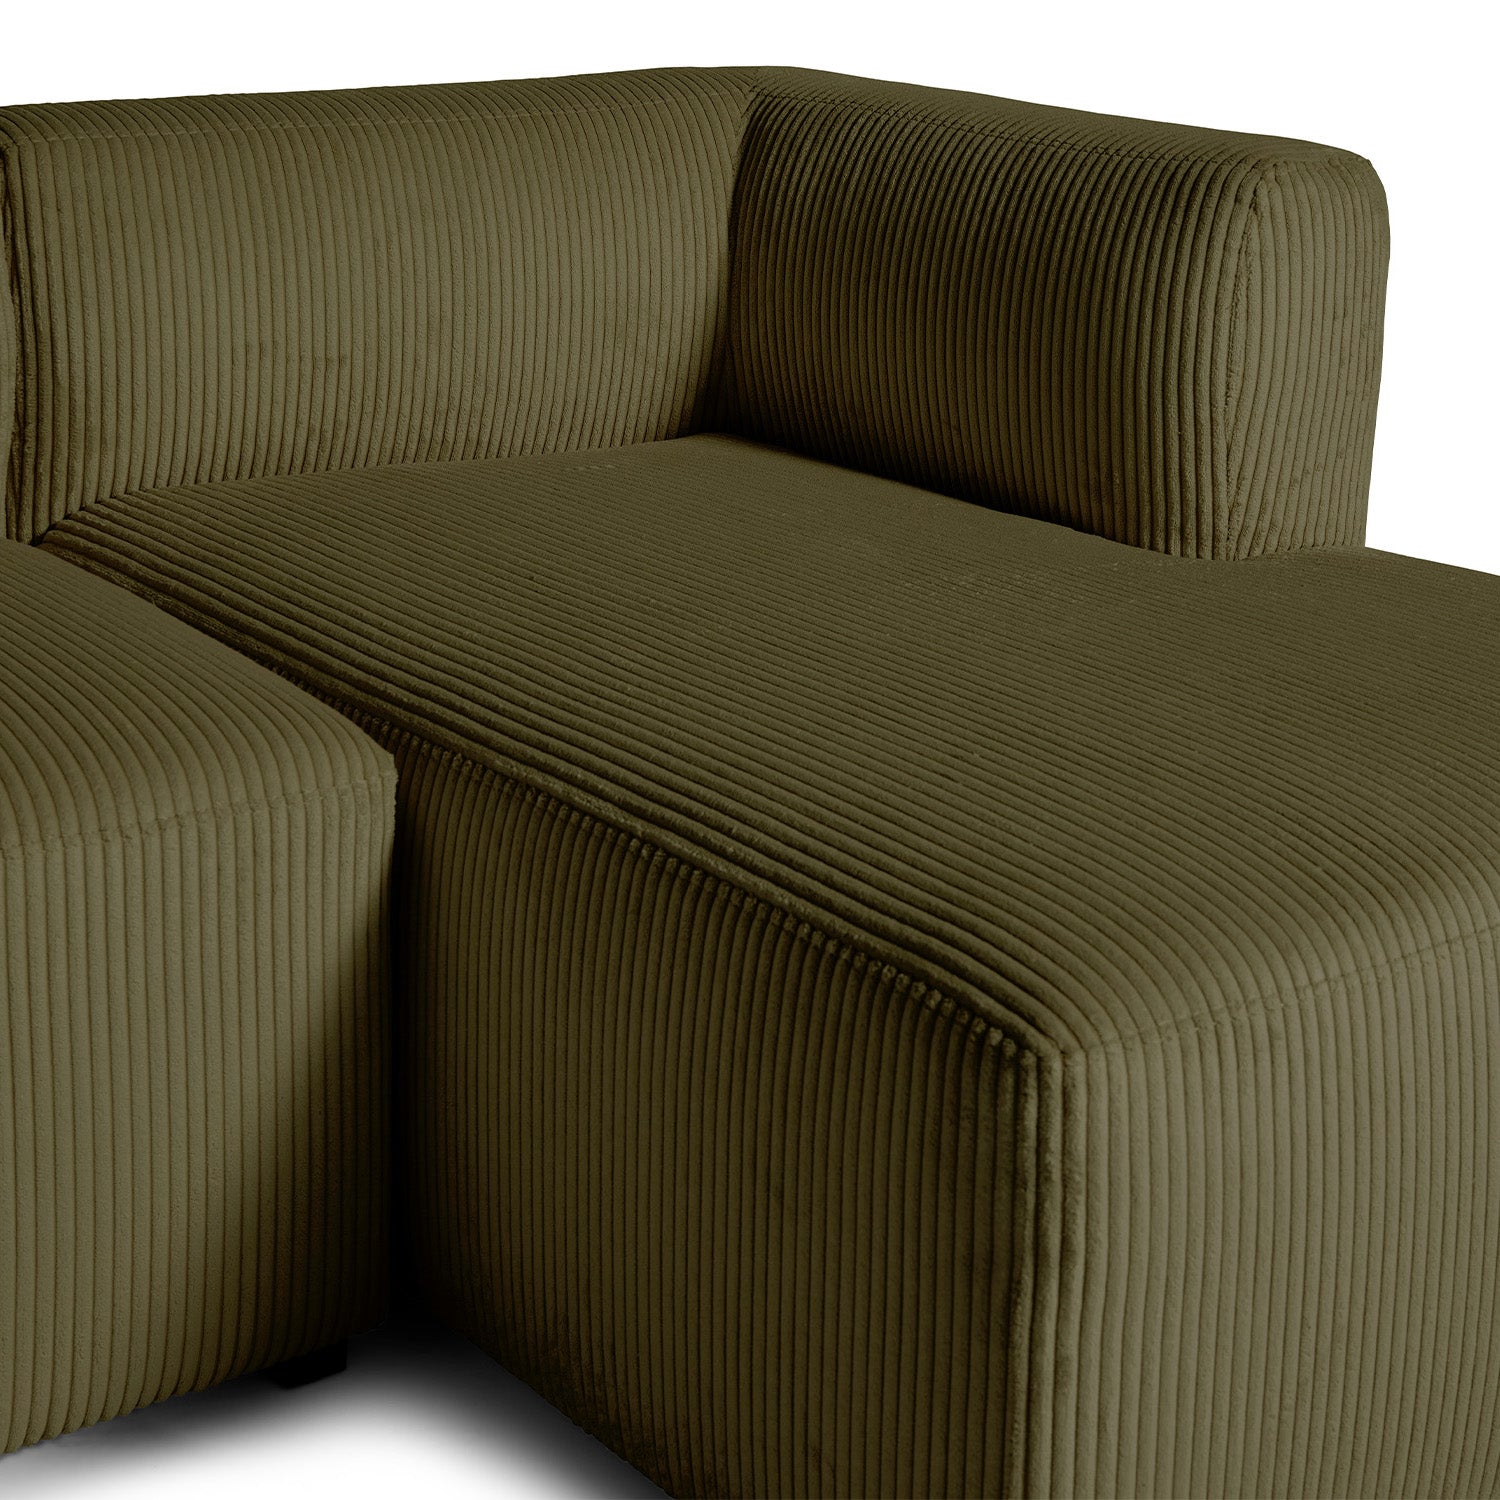 Roma lille chaiselong sofa højrevendt, fløjl - Møbelkompagniet